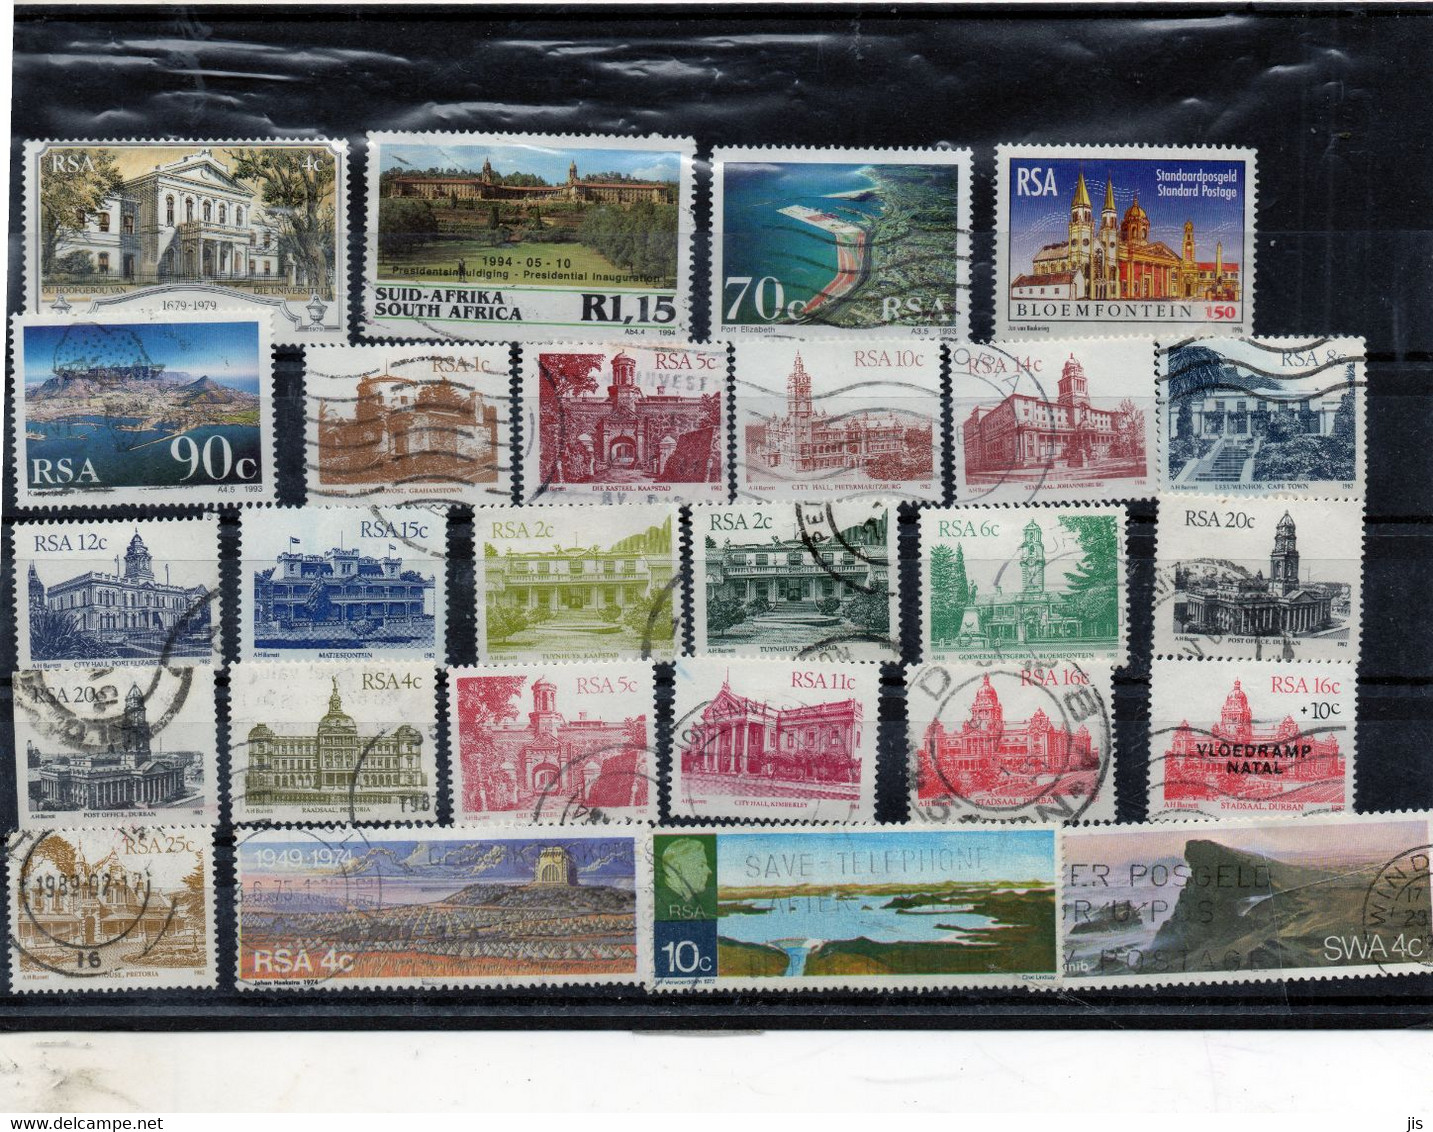 AFRIQUE DU SUD lot de plus de 310 timbres oblitérés différents dont anciens